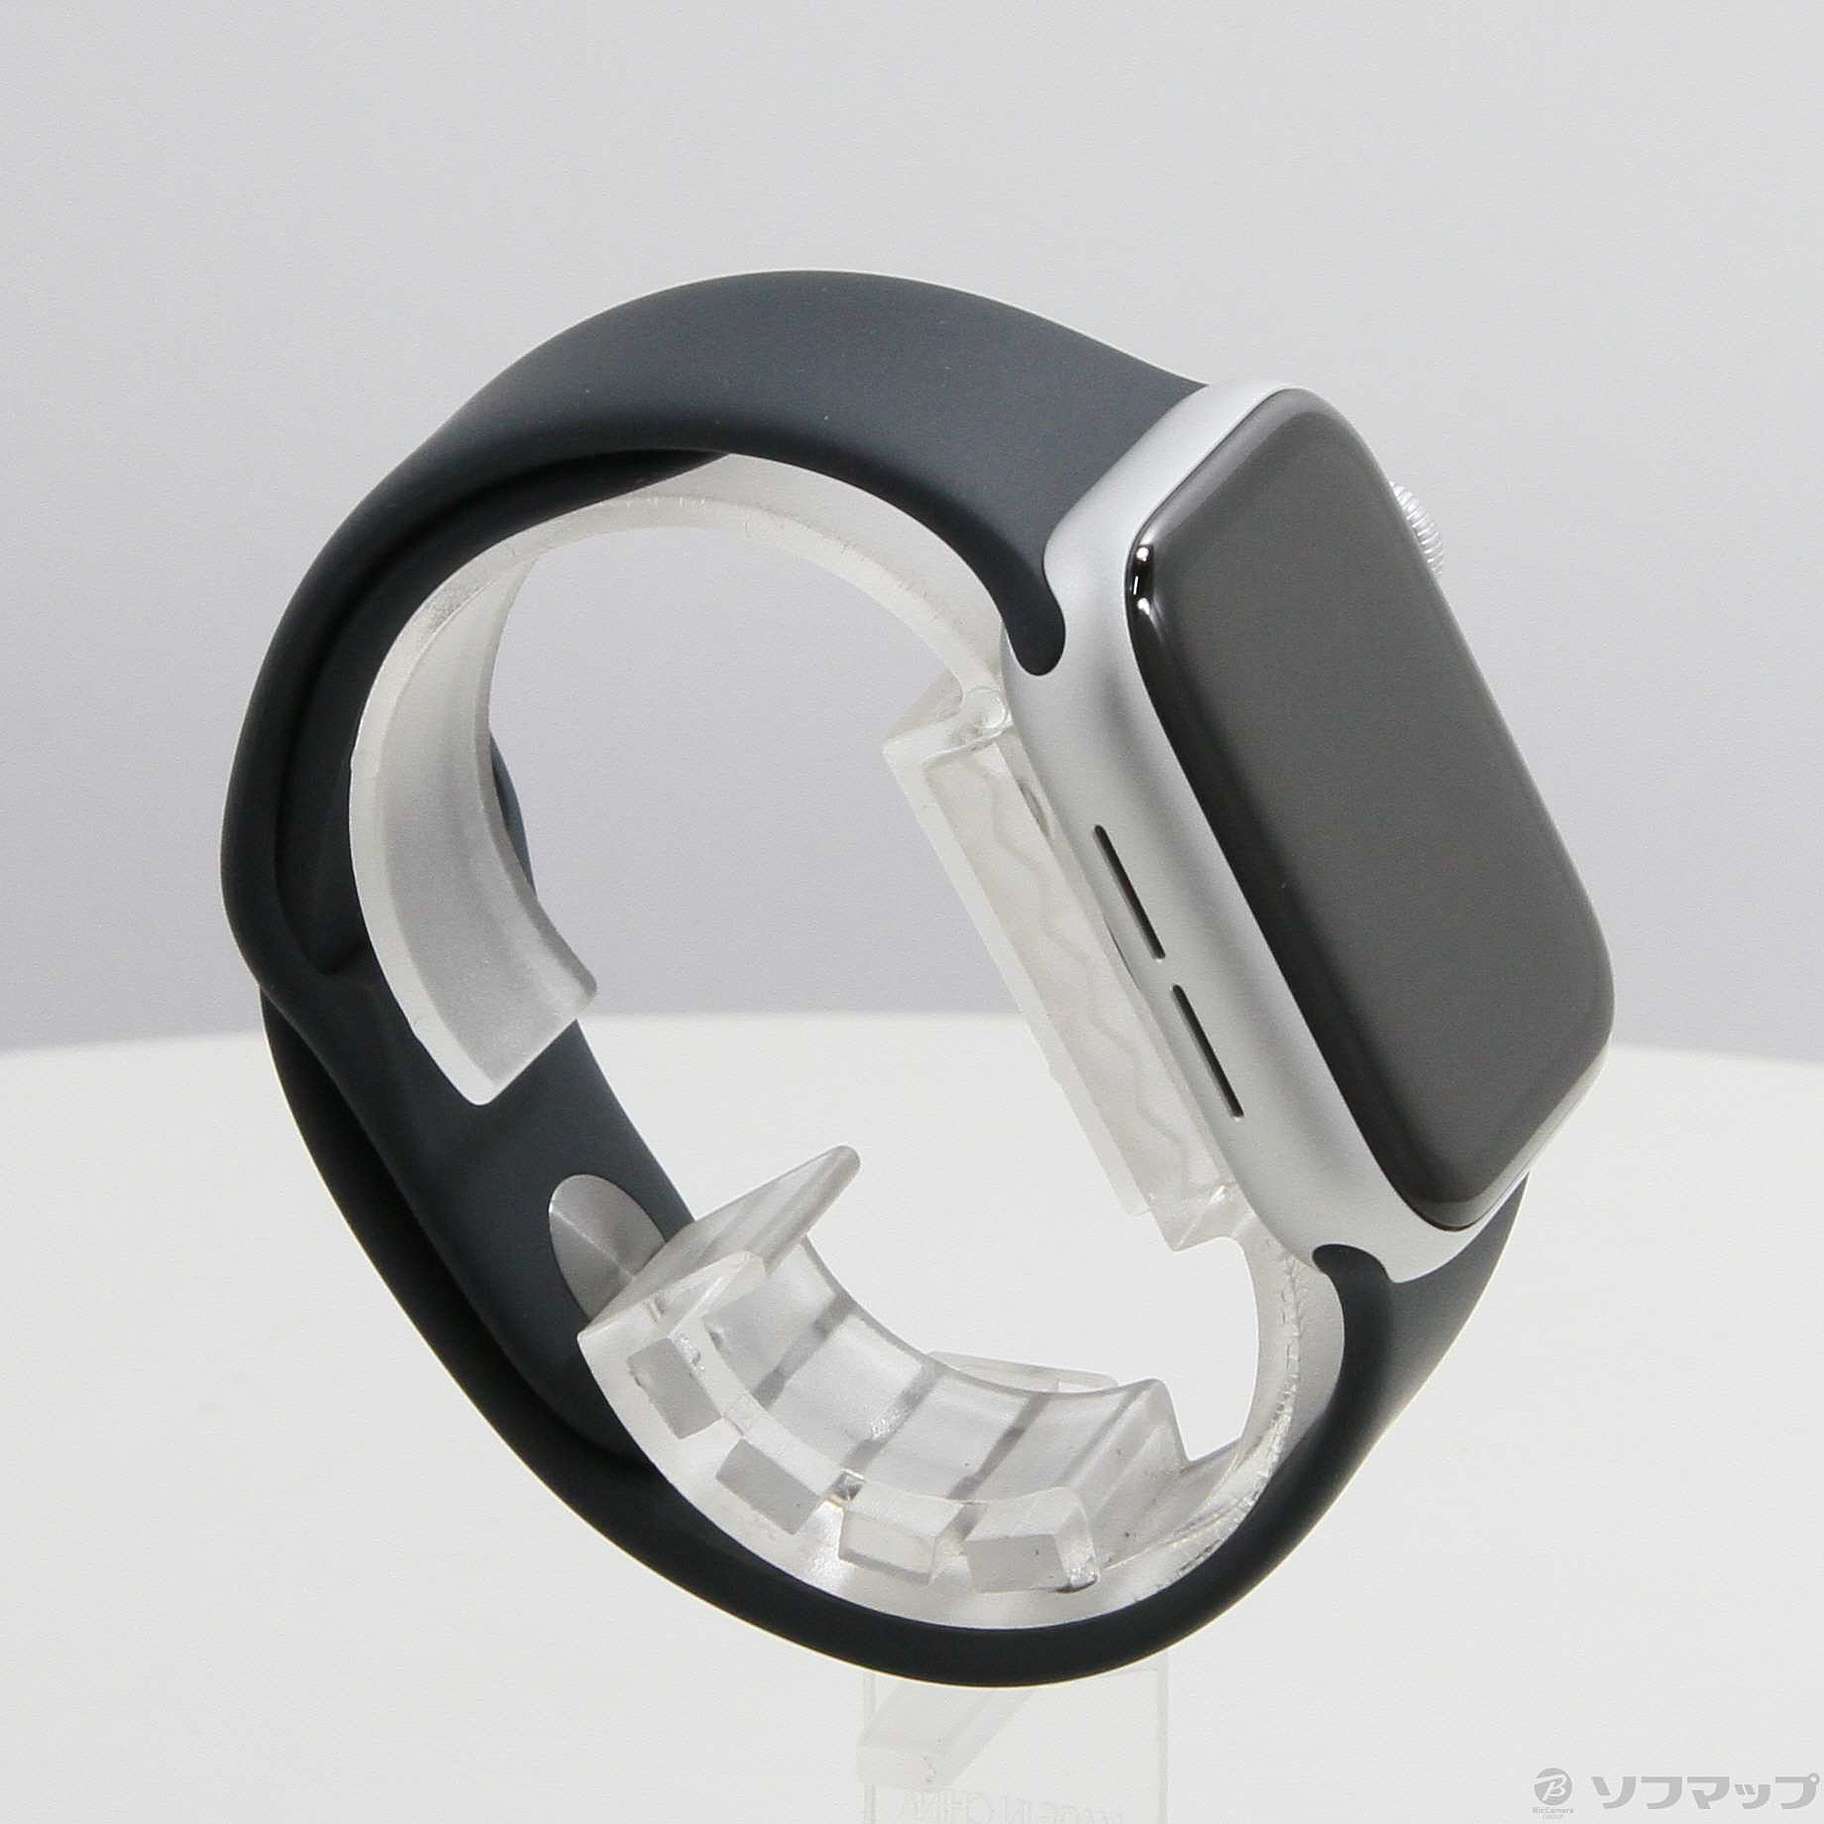 Apple Watch SE 第2世代 GPS 40mm シルバーアルミニウムケース ミッドナイトスポーツバンド